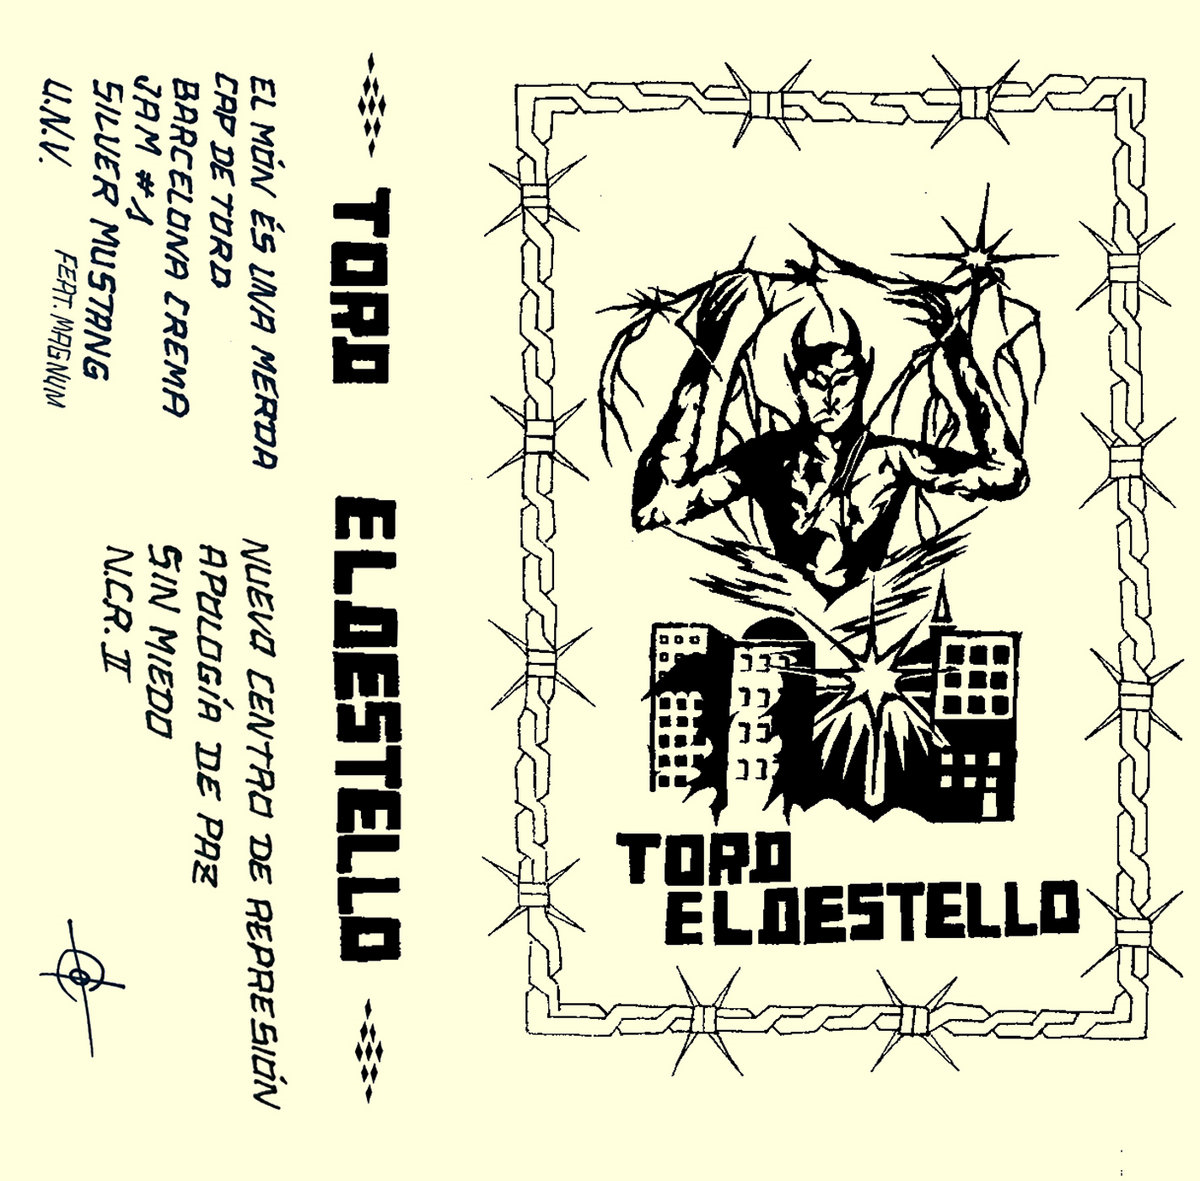 De la rabia a la reflexión, escucha el álbum compartido entre las bandas catalanas, TORD y El Destello.